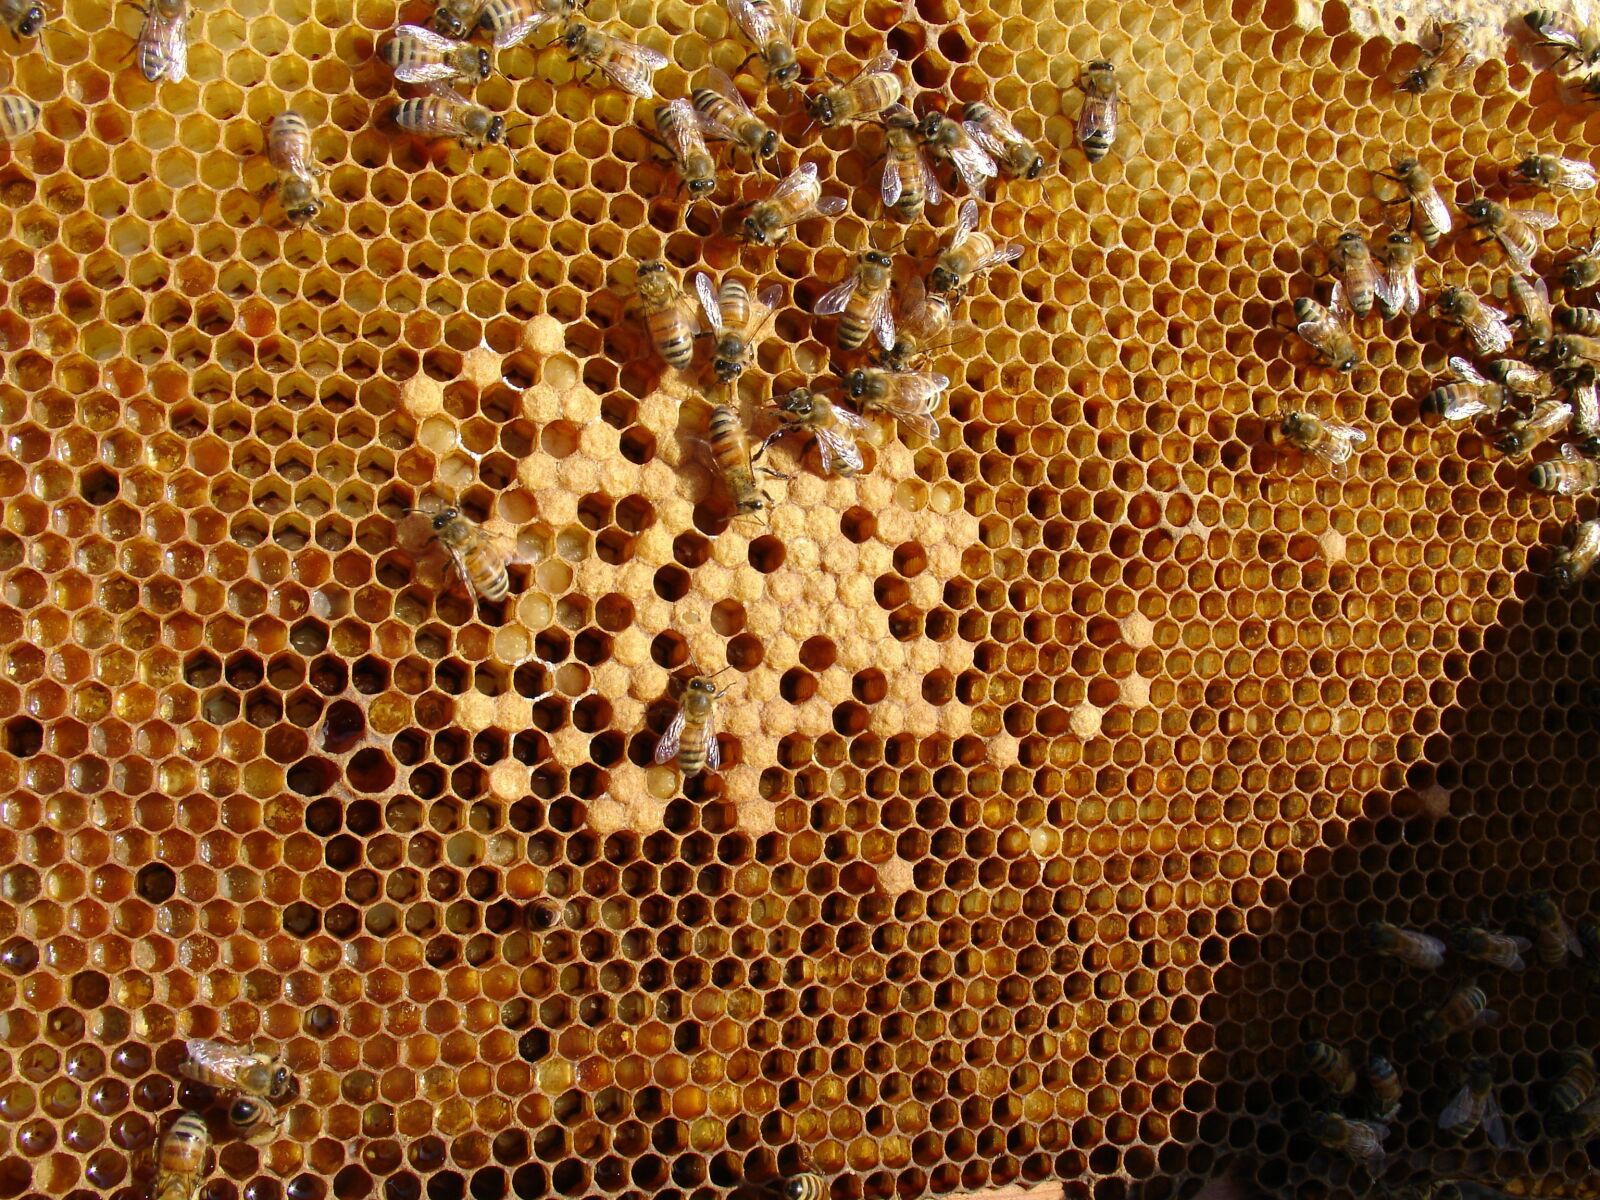 Sony DSC-V3 sample photo. Bee, honeycomb, folks ' photography